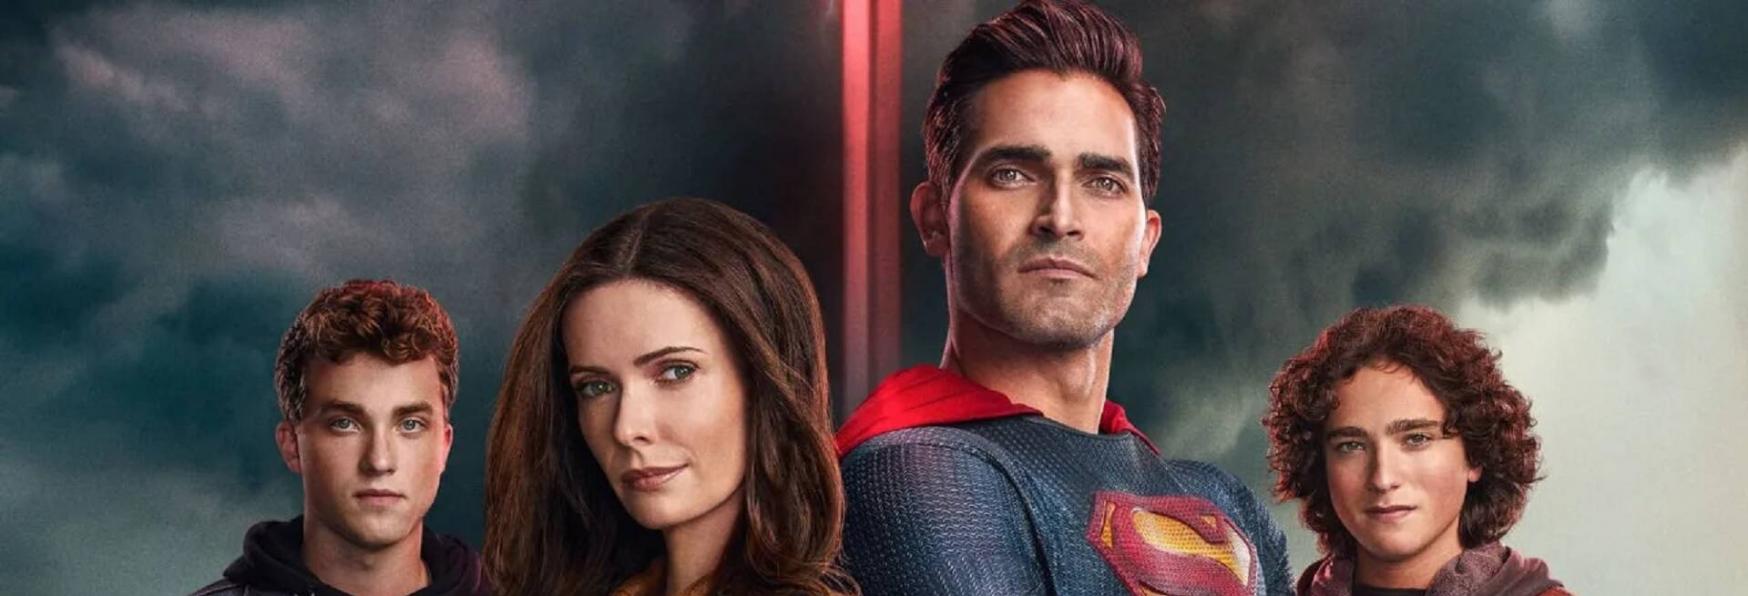 Superman & Lois 2: The CW svela il Poster della nuova Stagione della Serie TV